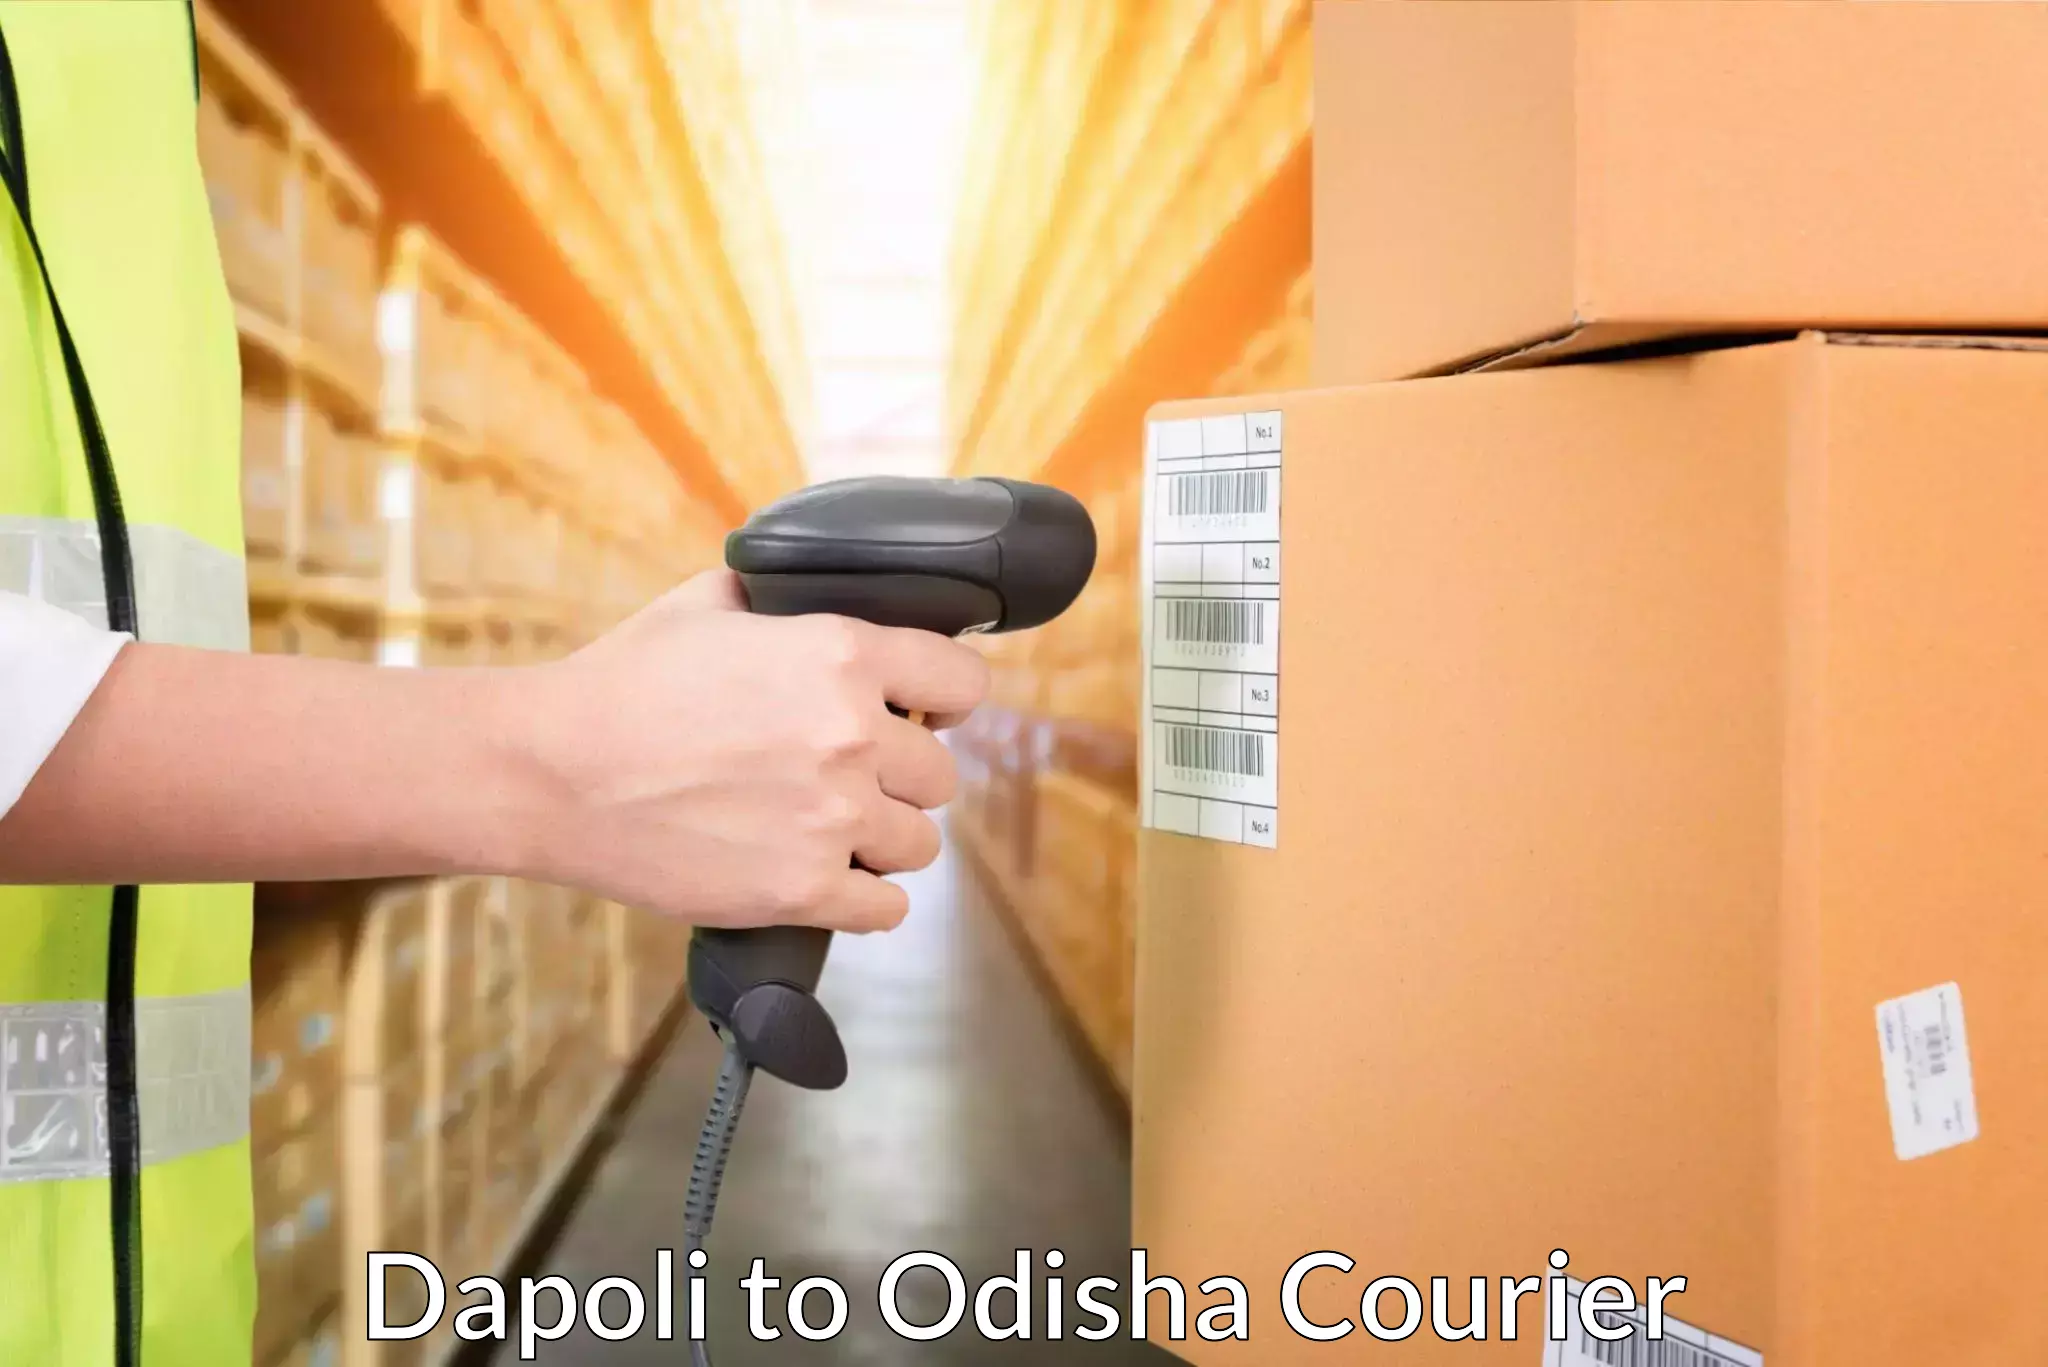 Global shipping solutions Dapoli to Mathili